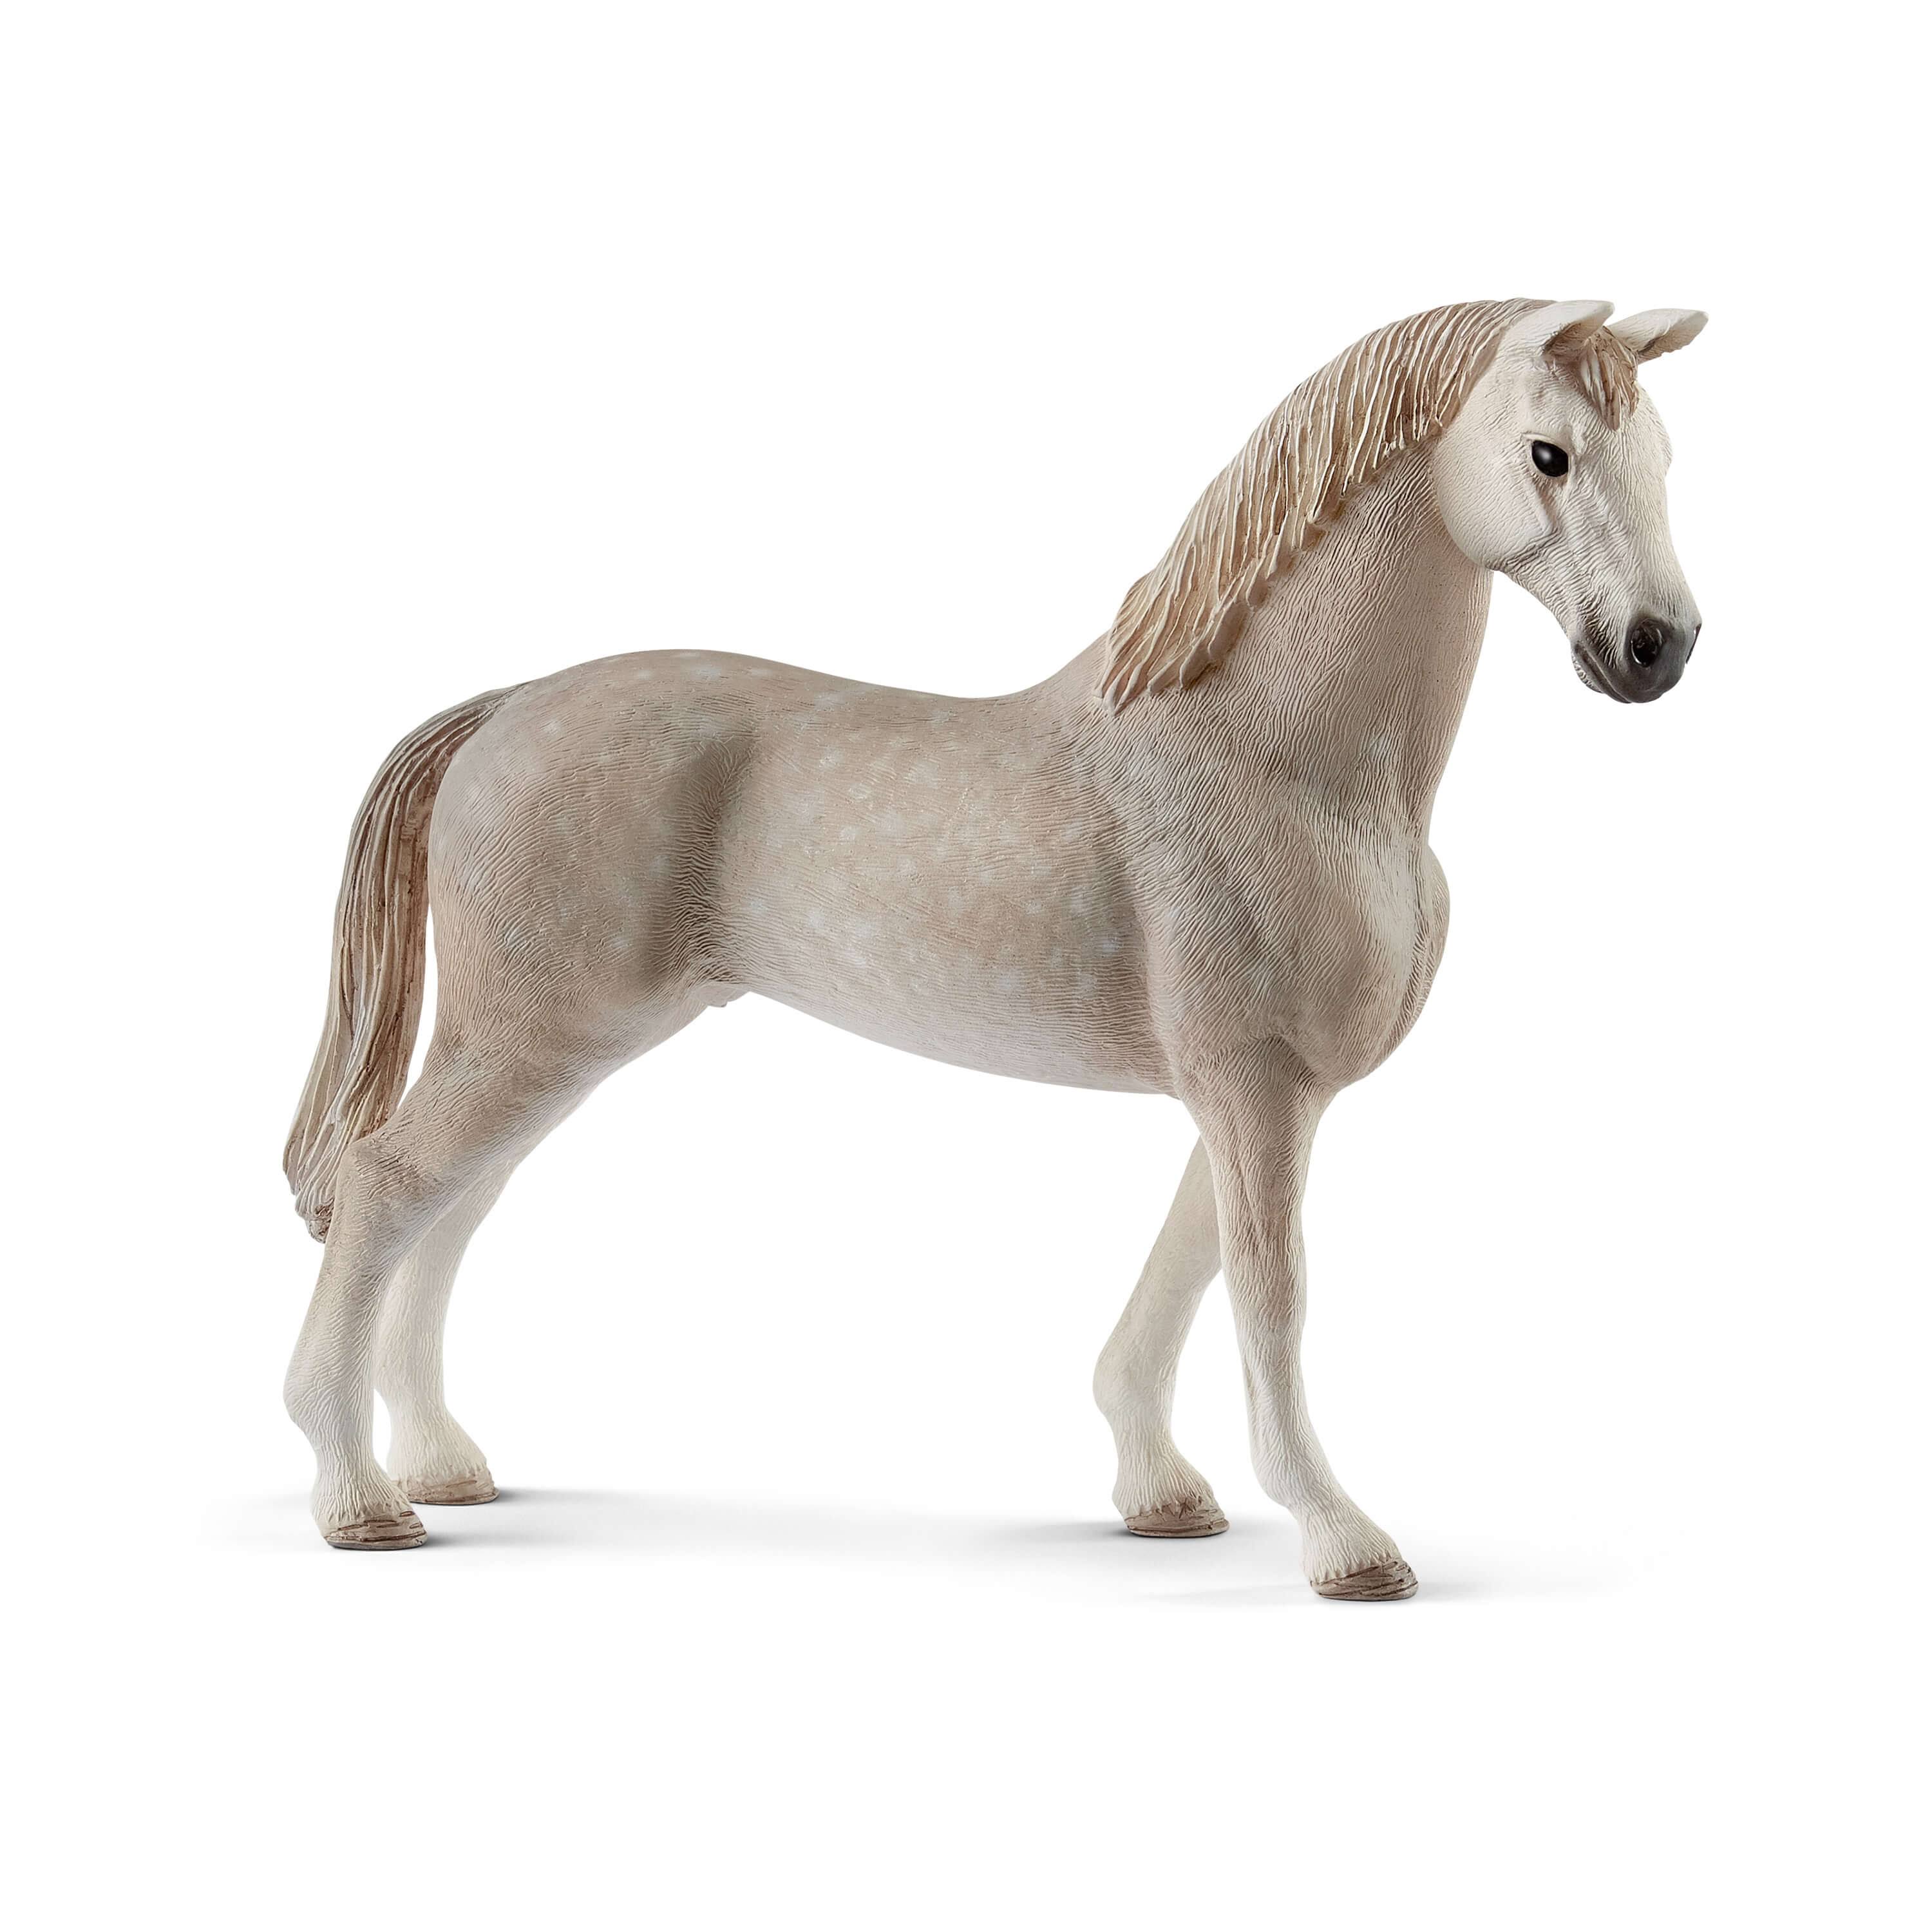 Schleich Holsteiner Gelding Horse Figurine